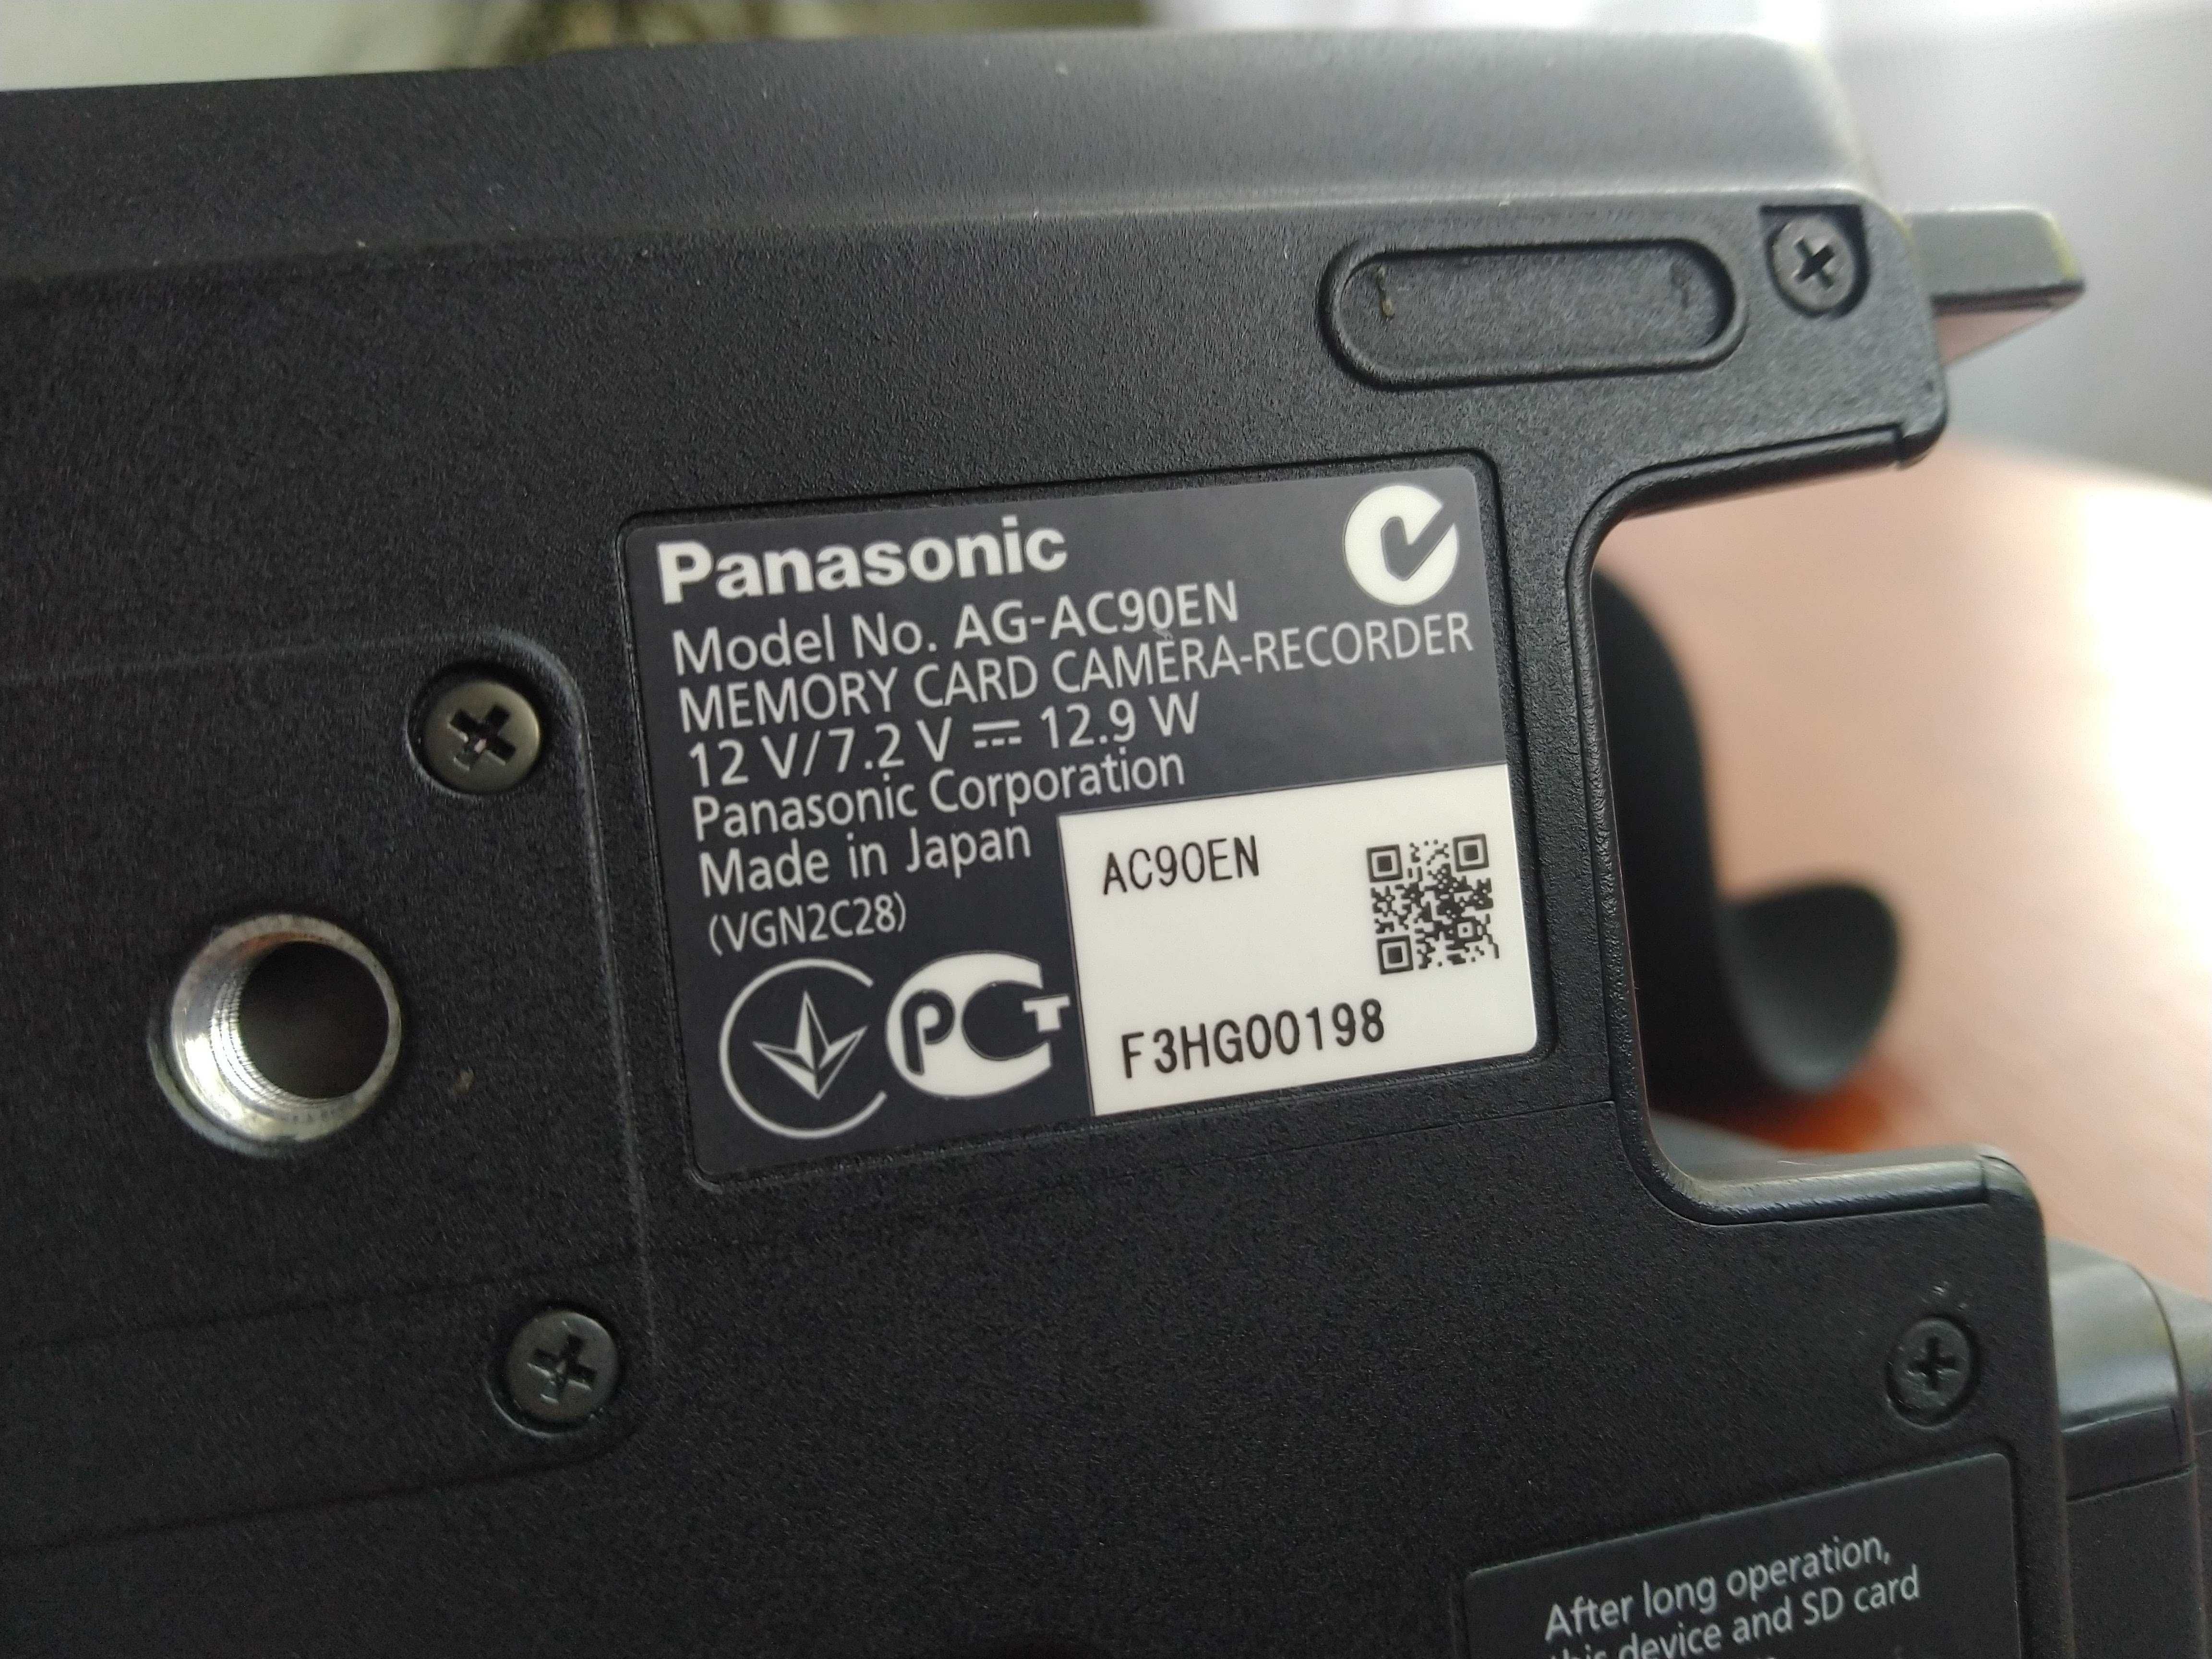 Відеокамера Panasonic AG-AC90 (відео)